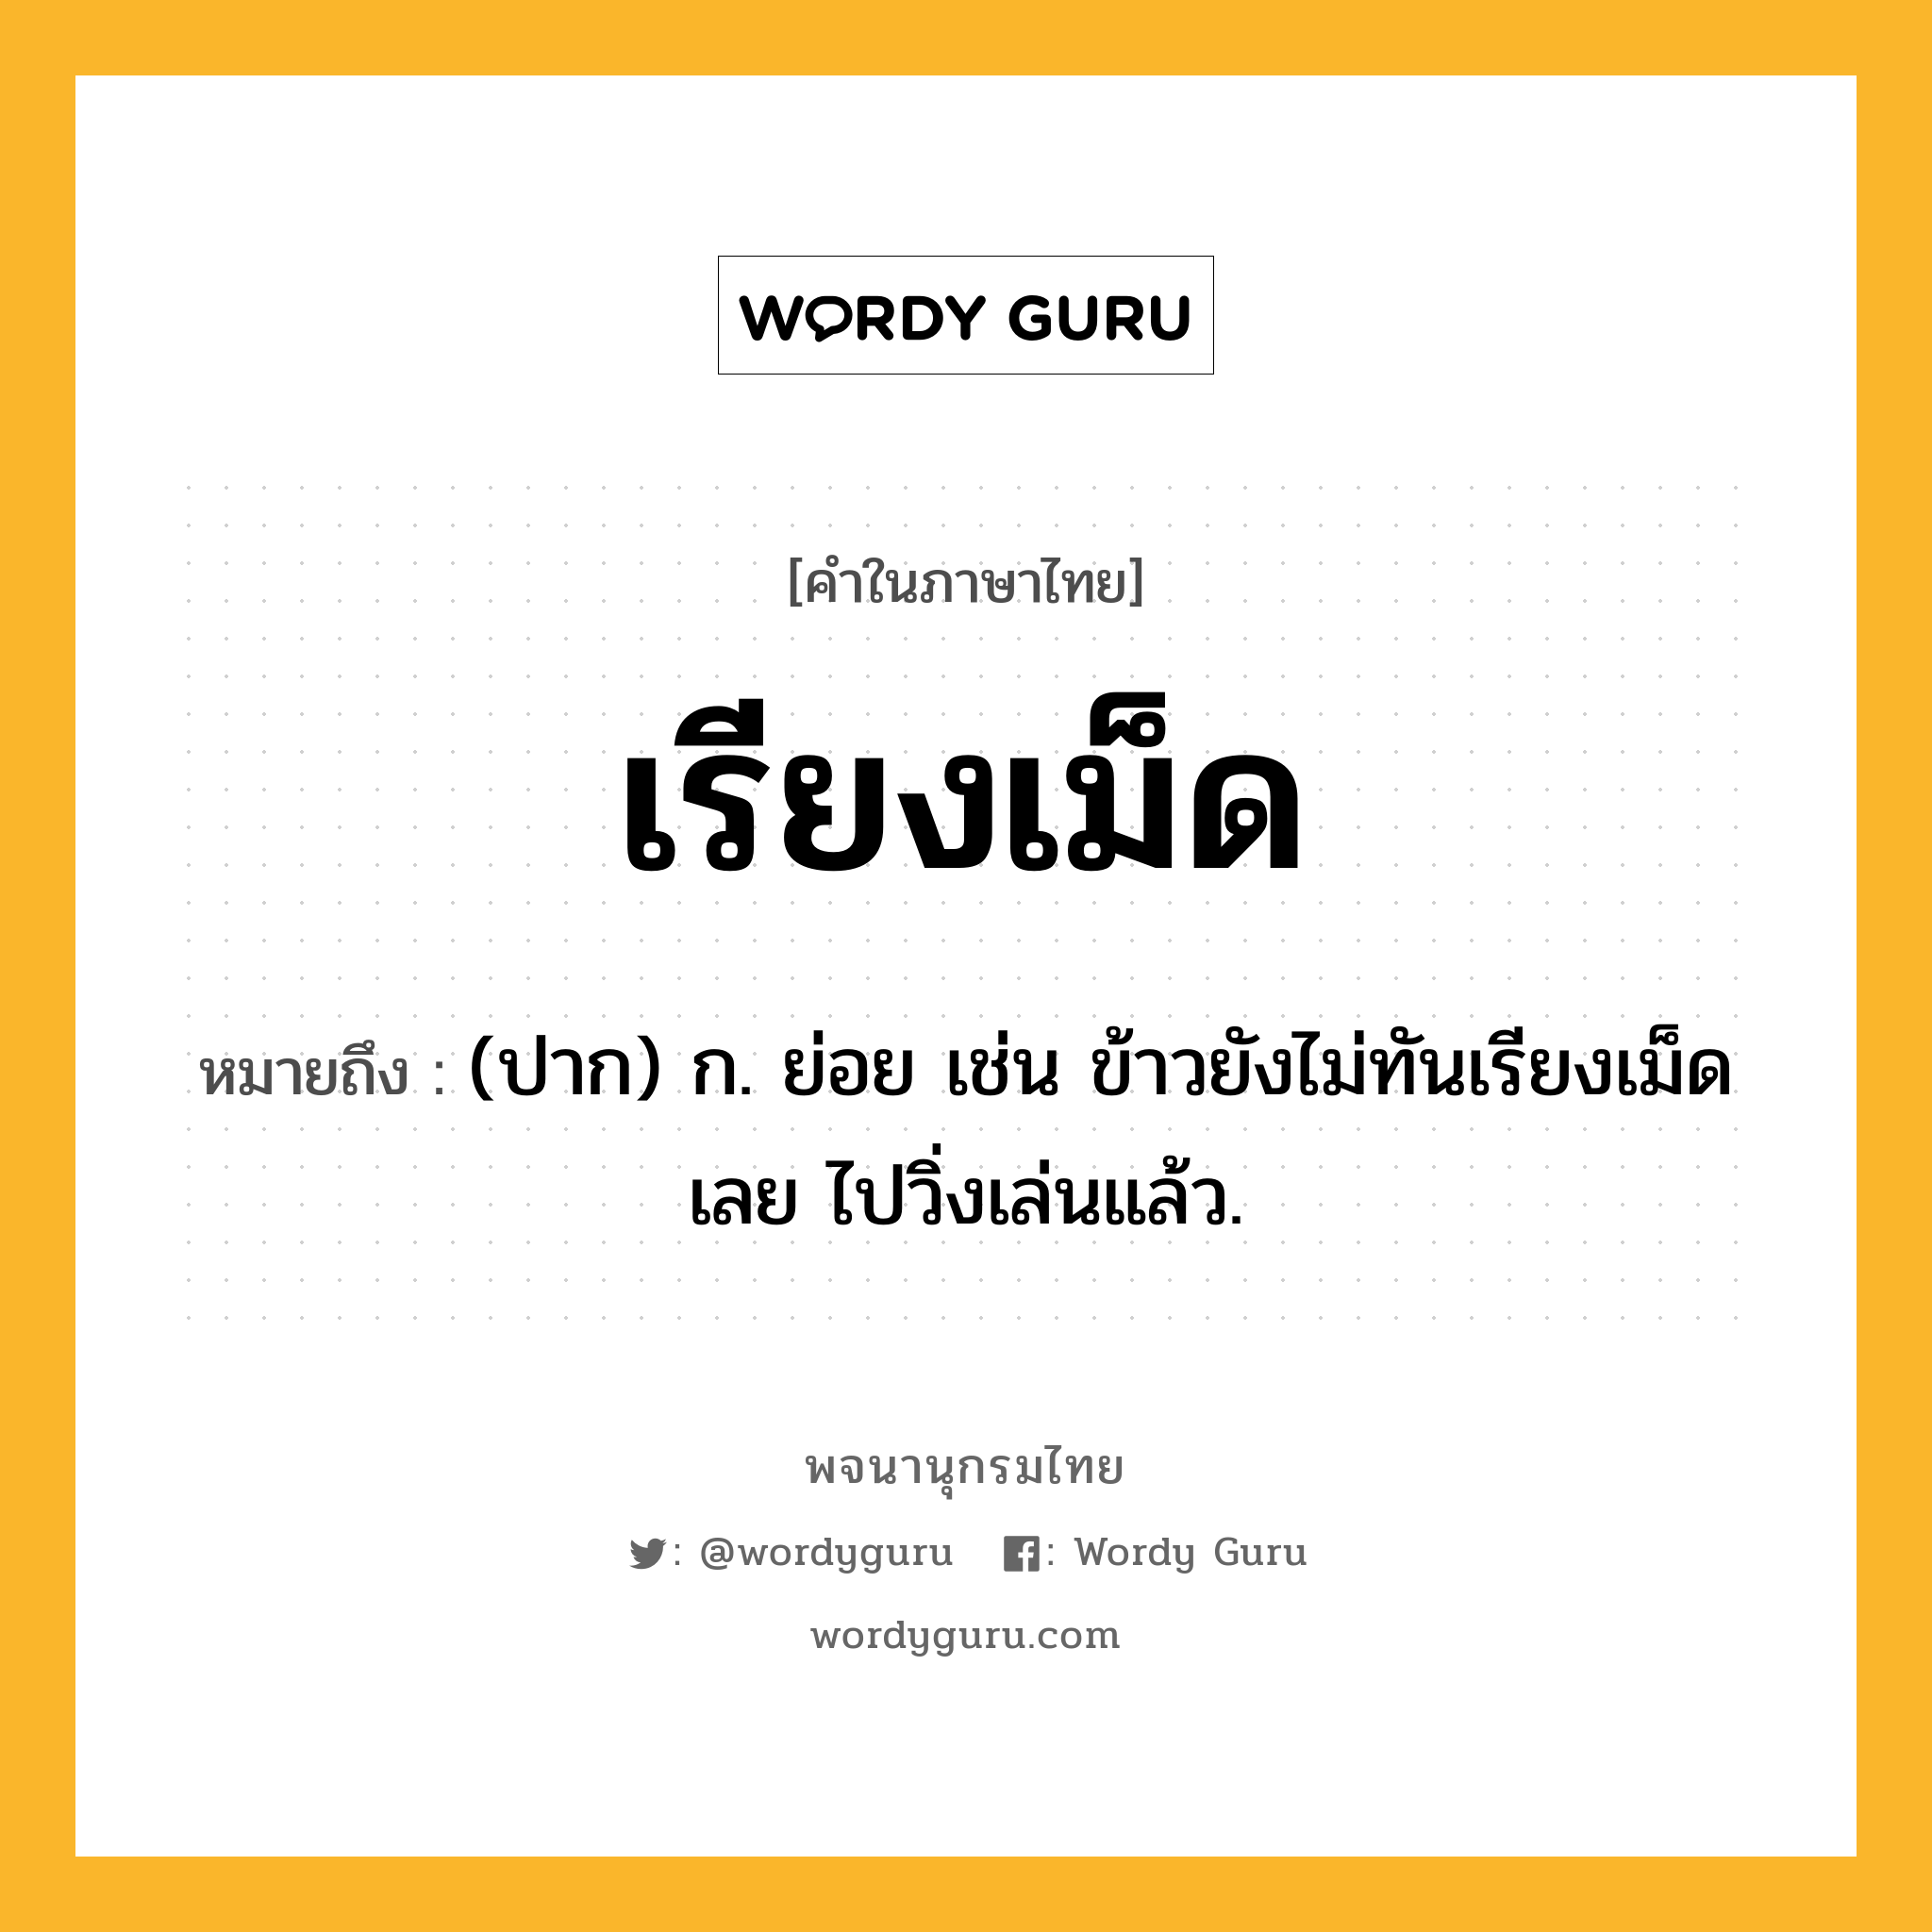 เรียงเม็ด หมายถึงอะไร?, คำในภาษาไทย เรียงเม็ด หมายถึง (ปาก) ก. ย่อย เช่น ข้าวยังไม่ทันเรียงเม็ดเลย ไปวิ่งเล่นแล้ว.